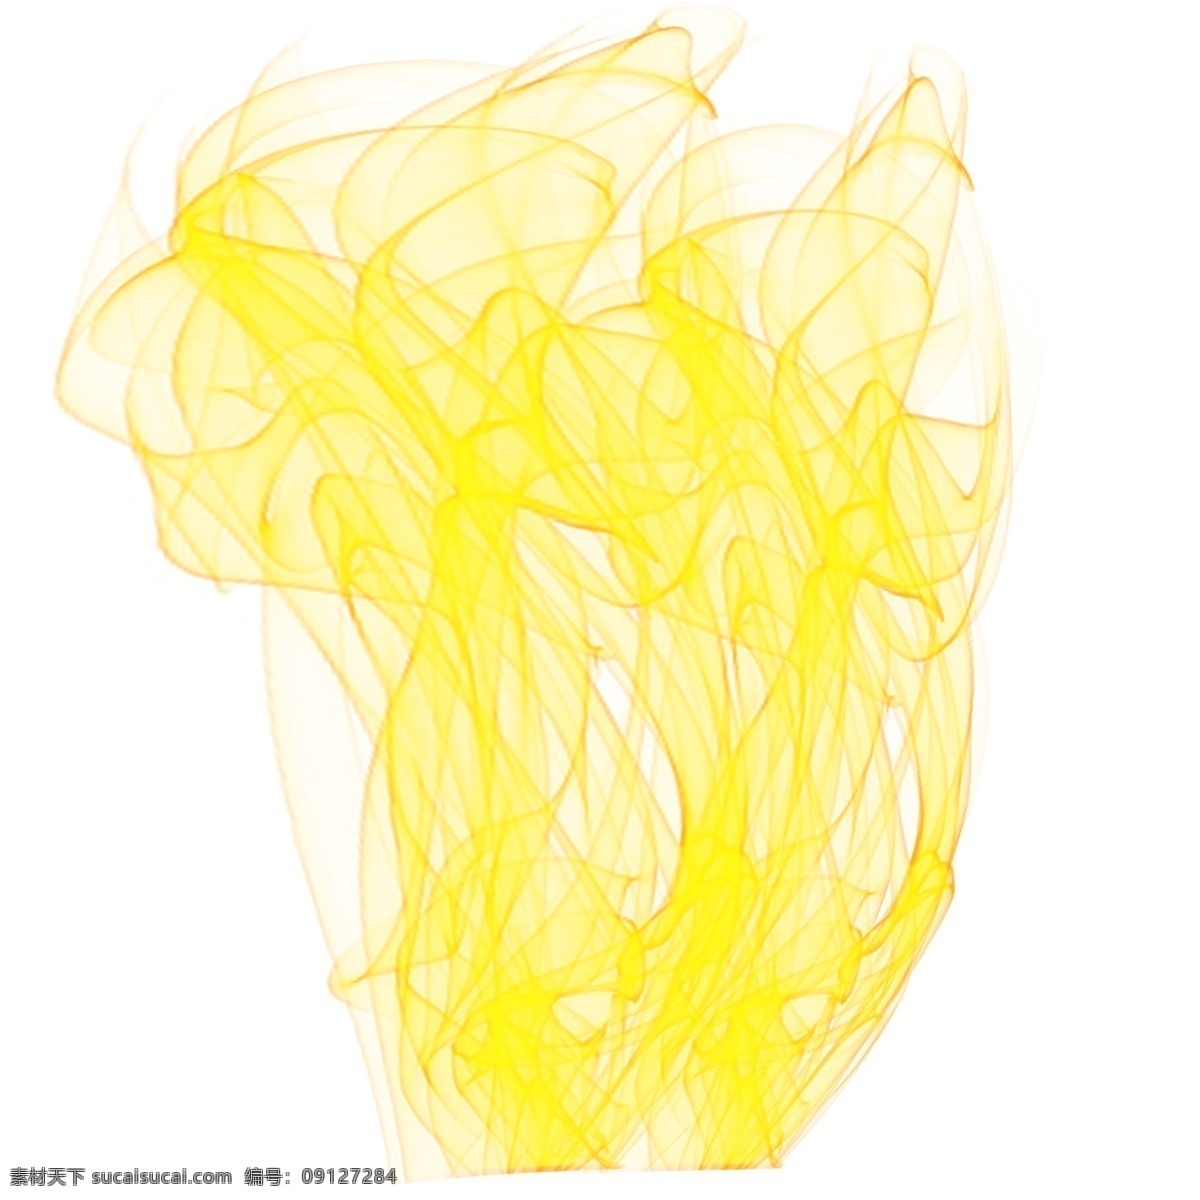 黄色 燃烧 火苗 元素 火焰 火 炫酷 烈焰 烈火 火焰矢量 跳动的火焰 艺术火焰 黄色火焰